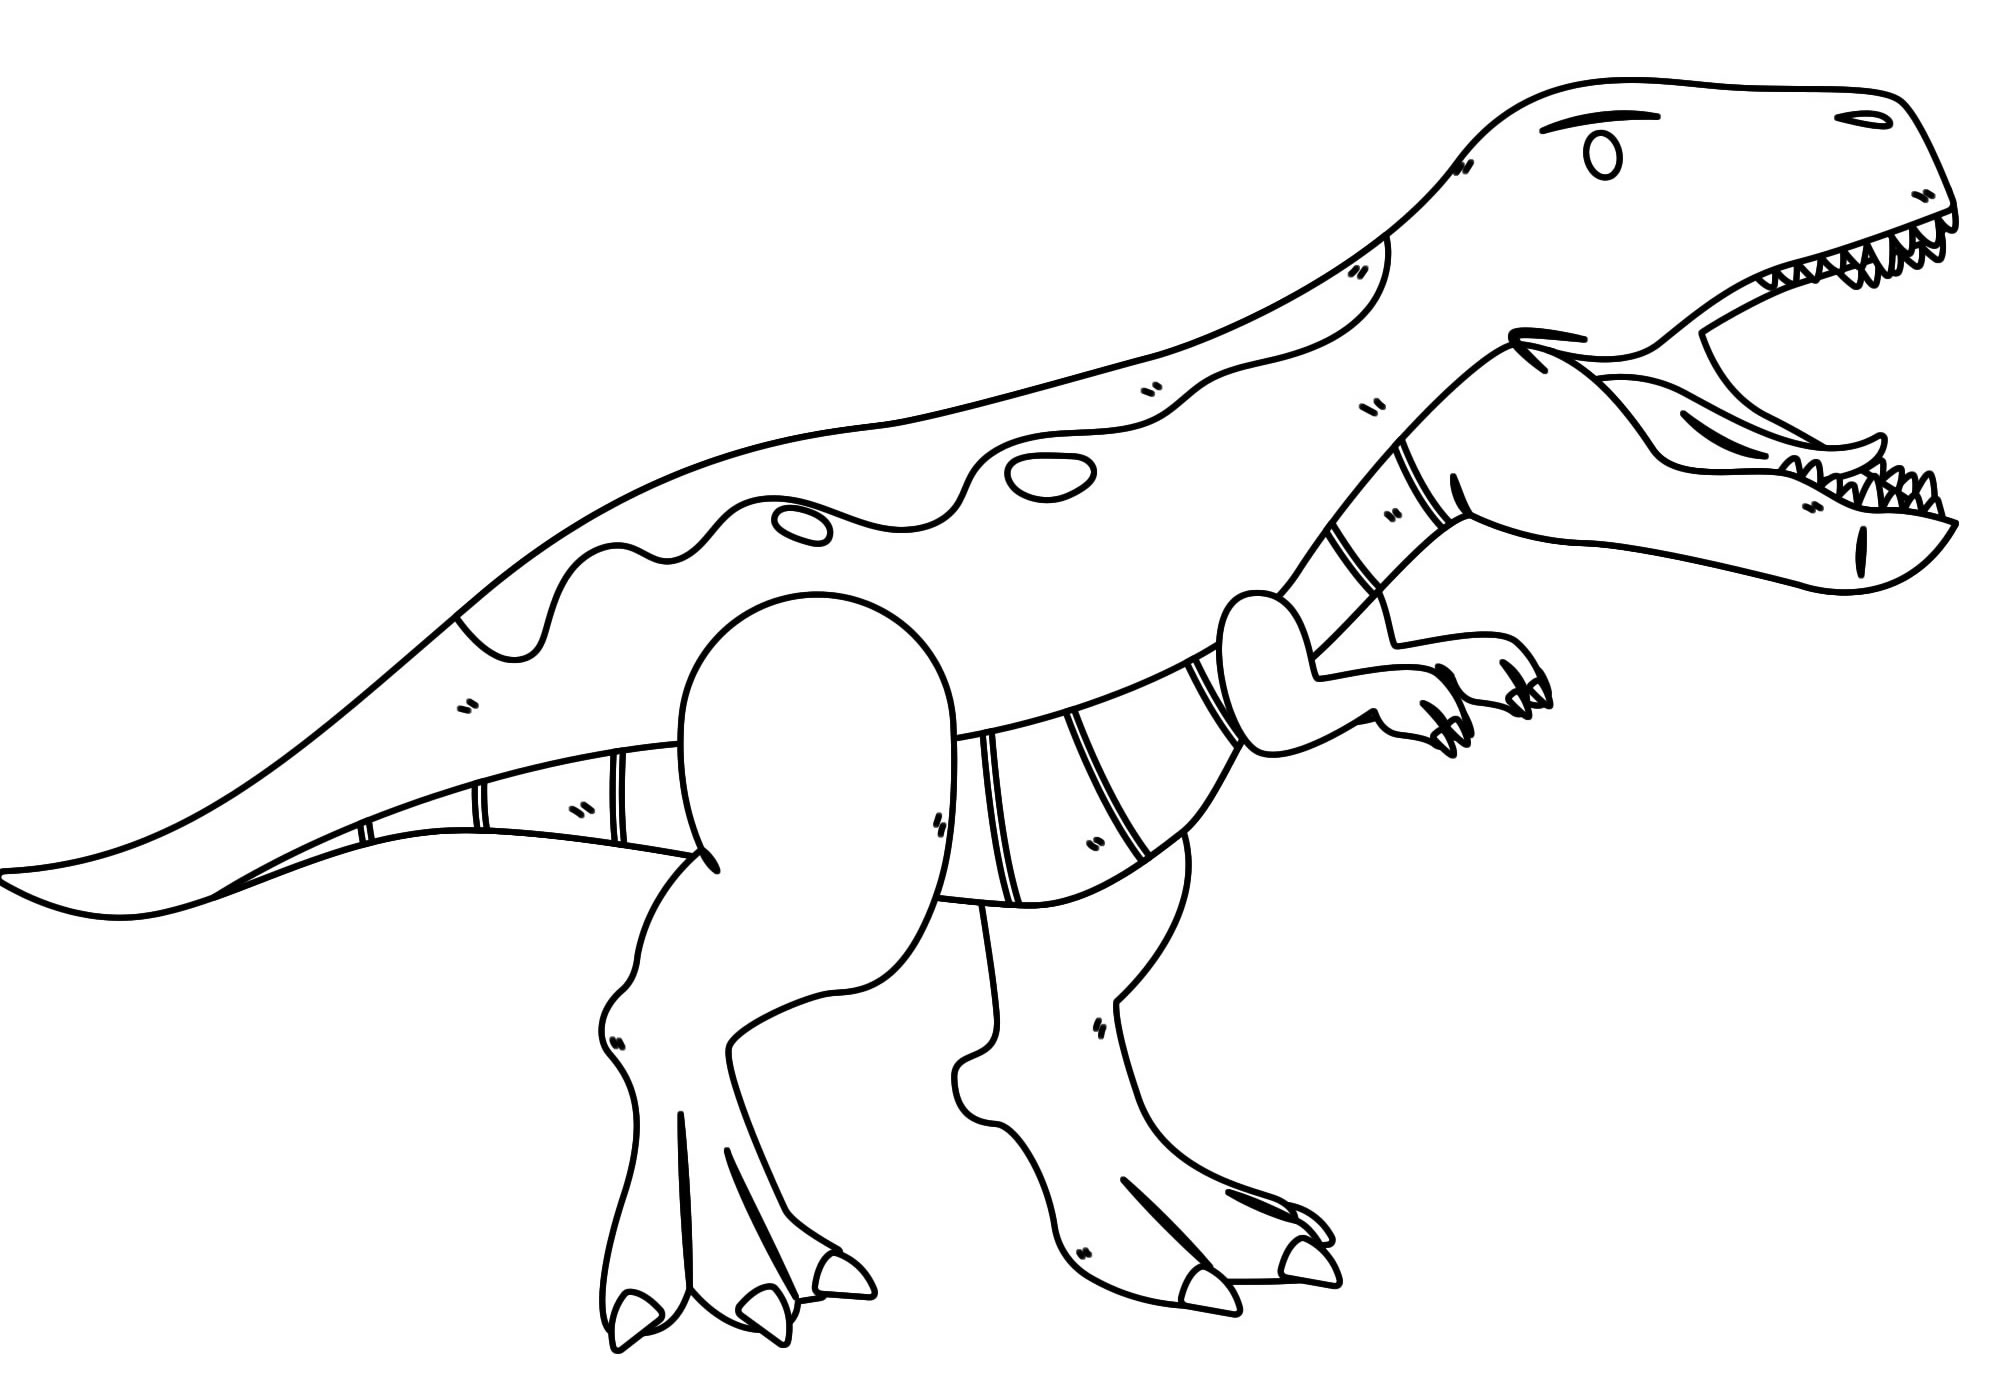 Раскраски - раскраски про динозавров